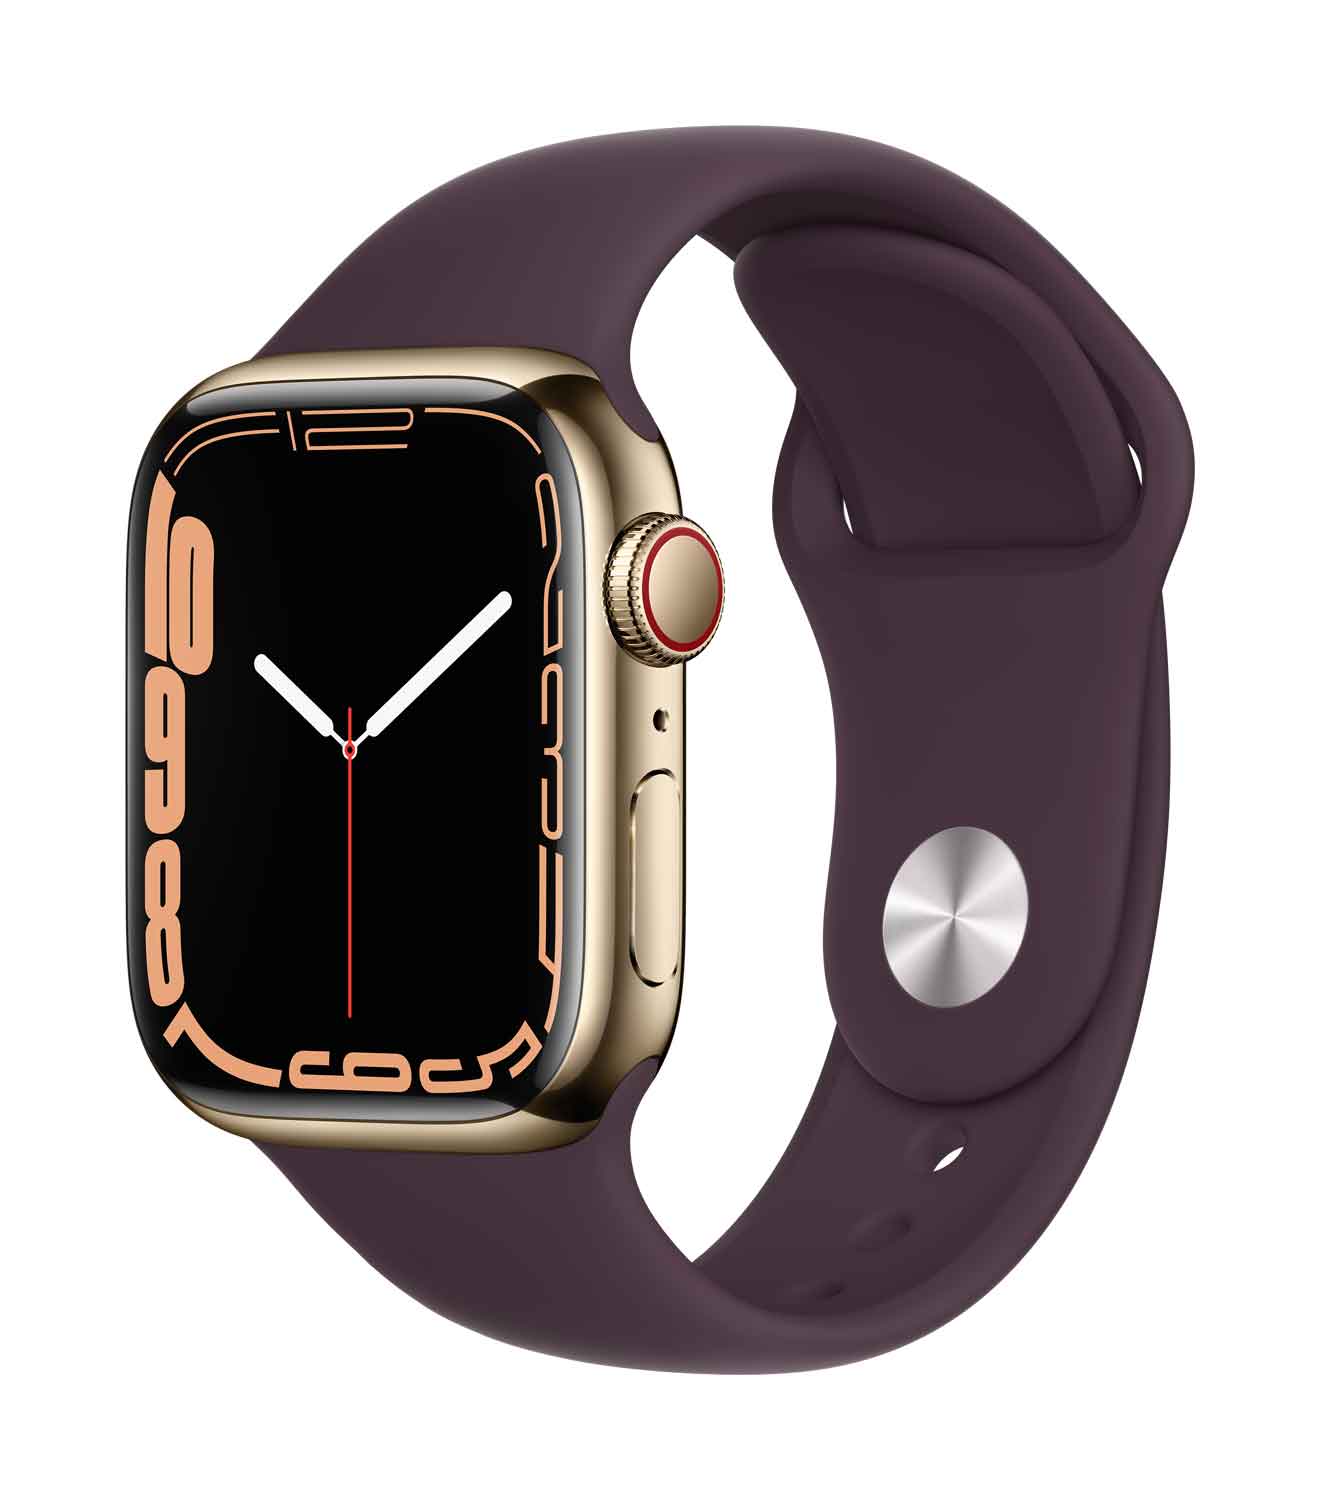 Apple Watch S7 Edelstahl 41mm Cellular Gold Sportarmband dunkelkirsch 41mm Edelstahlgehäuse Gold, Sportarmband dunkelkirsch. Armband 150-200 mm Umfang. (MKHY3FD/A)